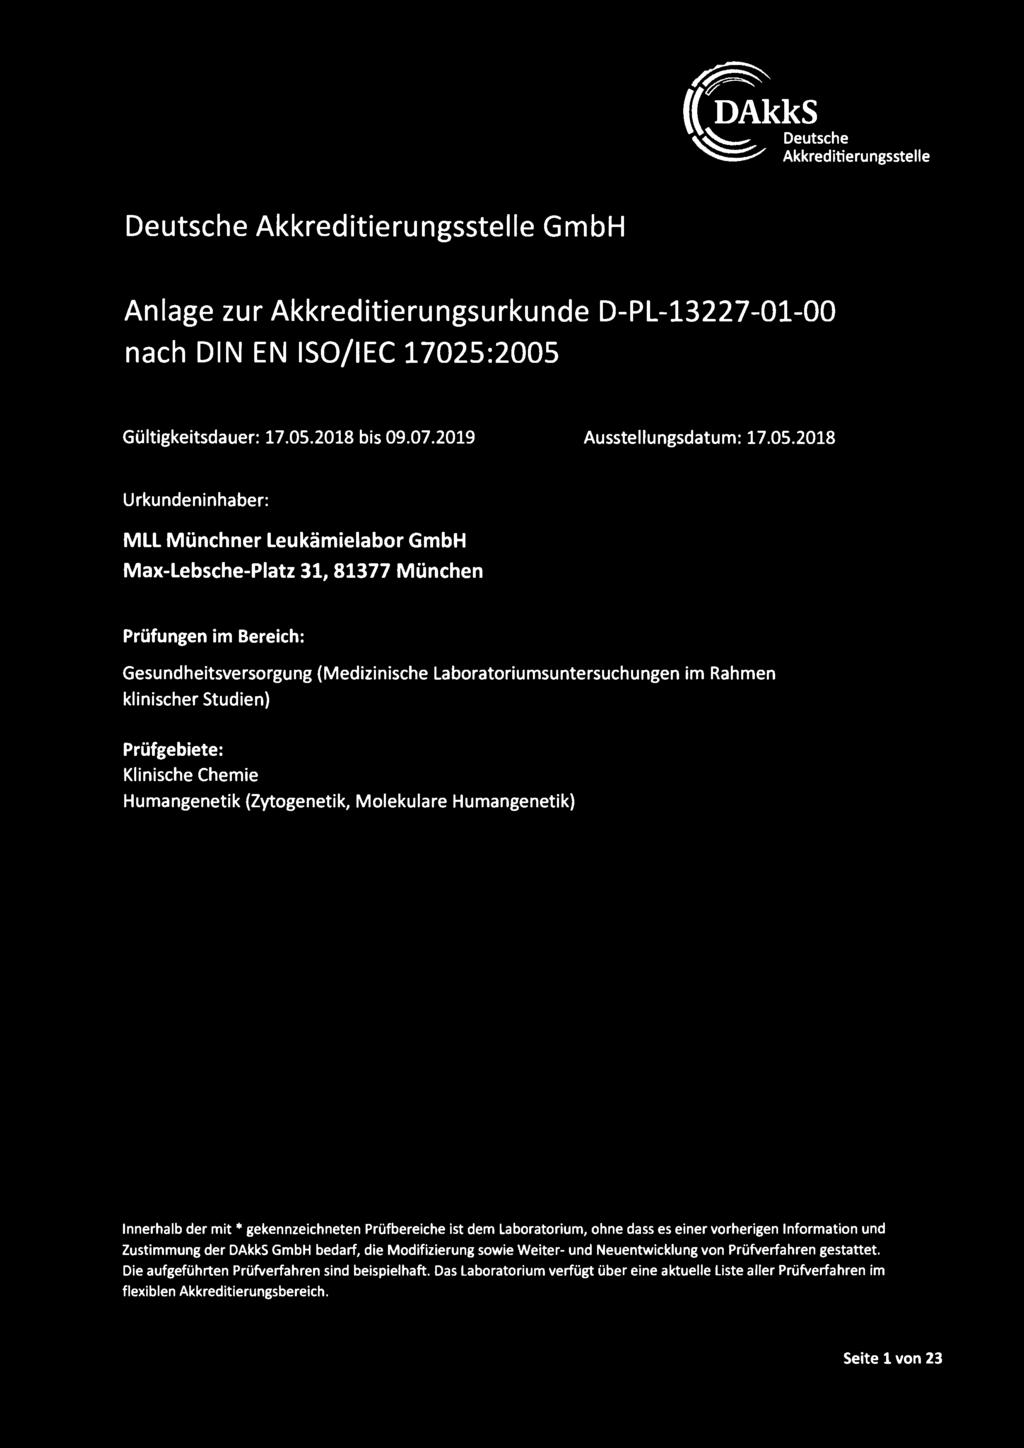 2018 Urkundeninhaber: MLL Münchner Leukämielabor GmbH Max-Lebsche-Piatz 31, 81377 München Prüfungen im Bereich: Gesundheitsversorgung (Medizinische Laboratoriumsuntersuchungen im Rahmen klinischer